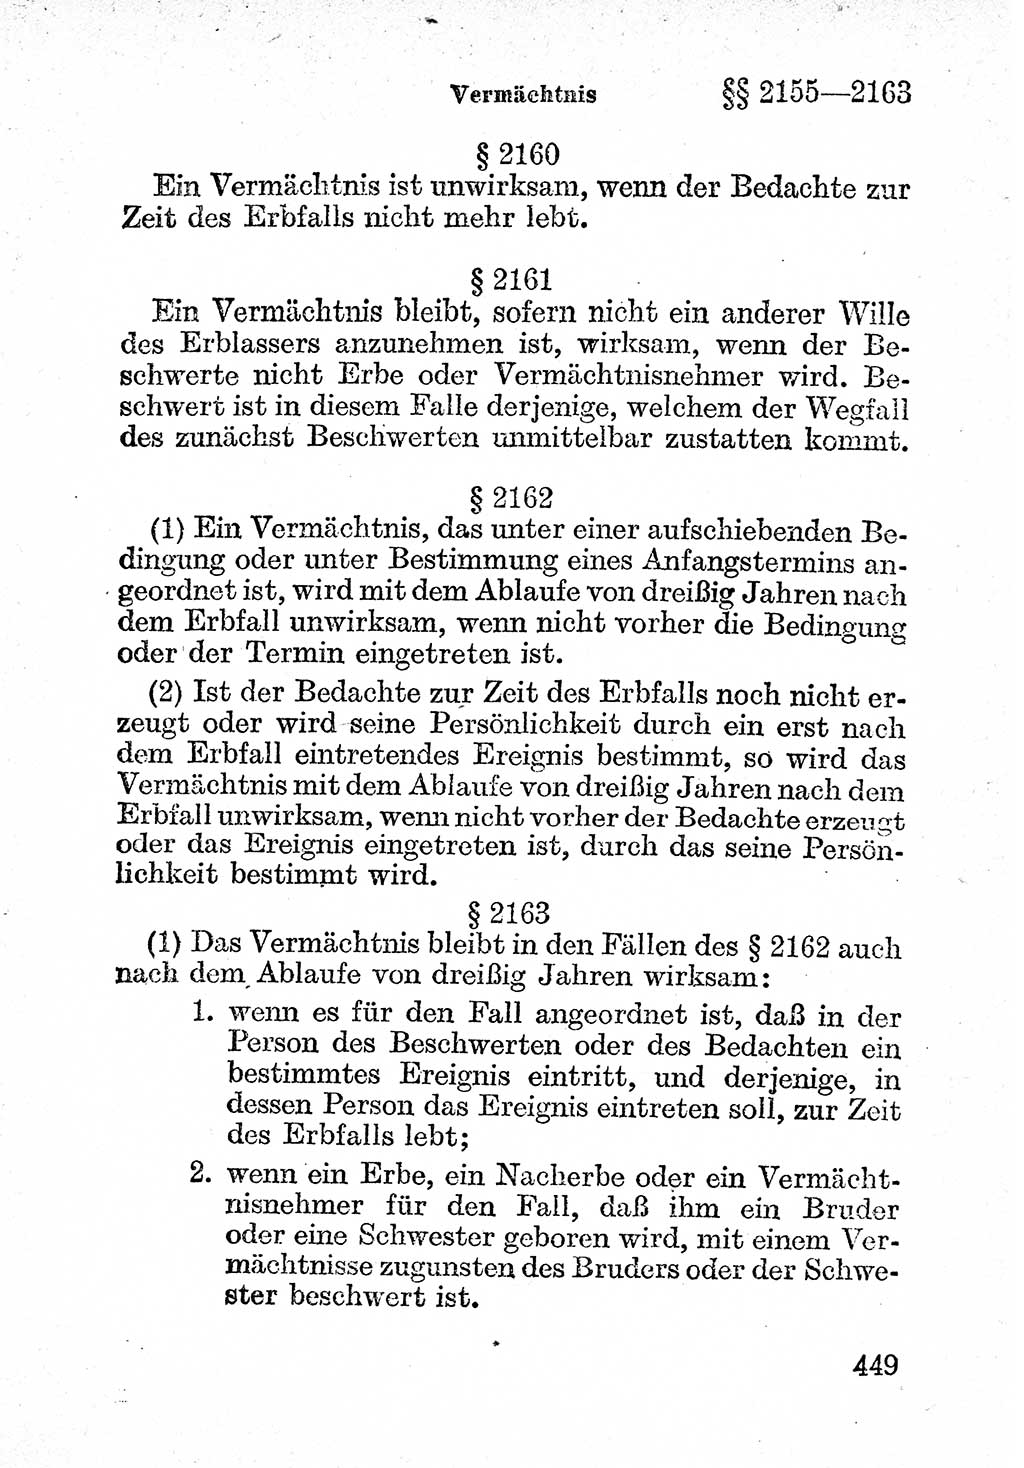 Bürgerliches Gesetzbuch (BGB) nebst wichtigen Nebengesetzen [Deutsche Demokratische Republik (DDR)] 1956, Seite 449 (BGB Nebenges. DDR 1956, S. 449)